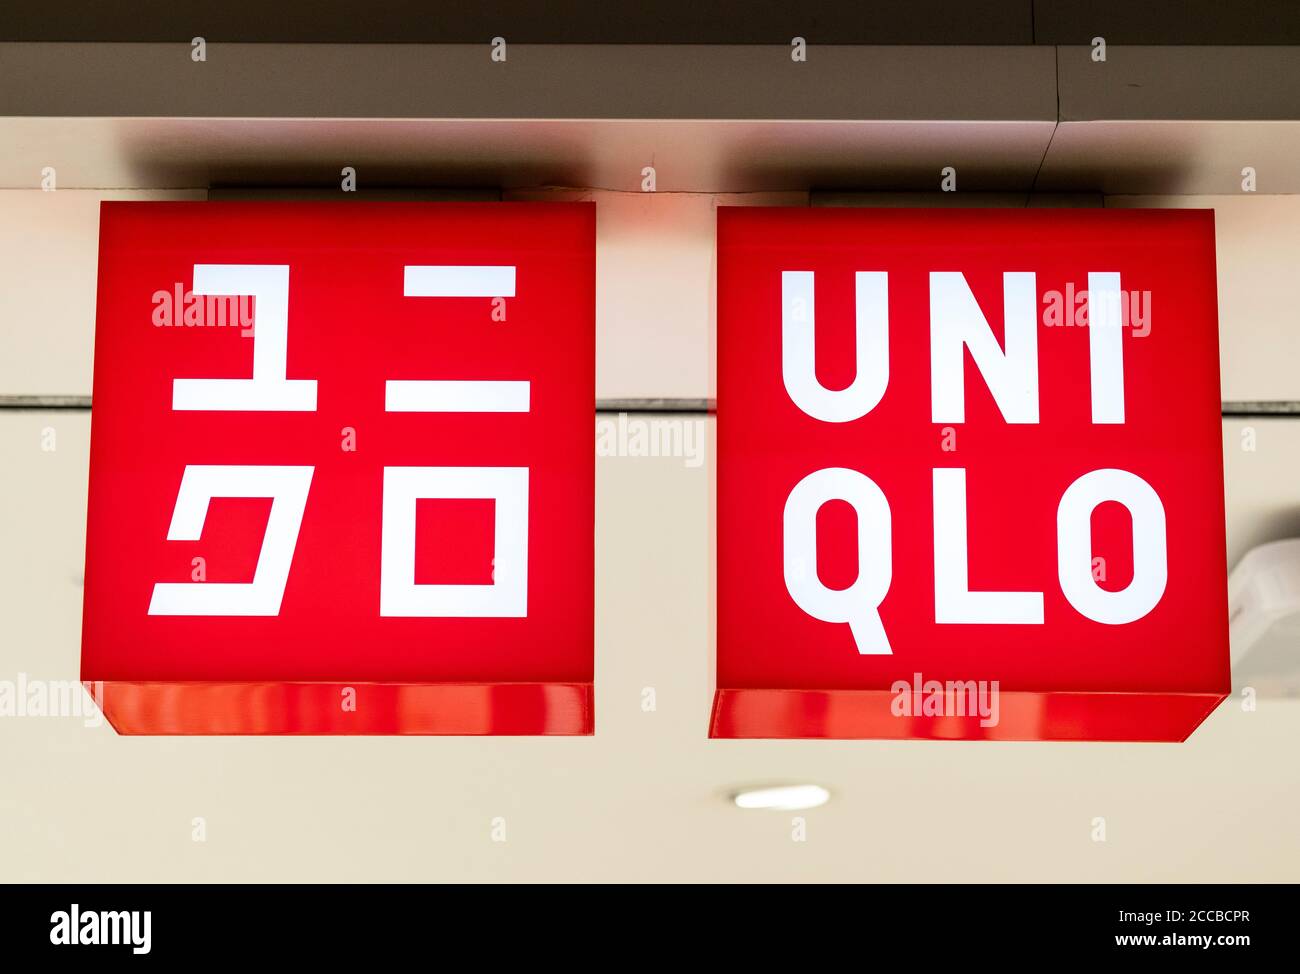 Uniqlo latest big brand to quit Russia